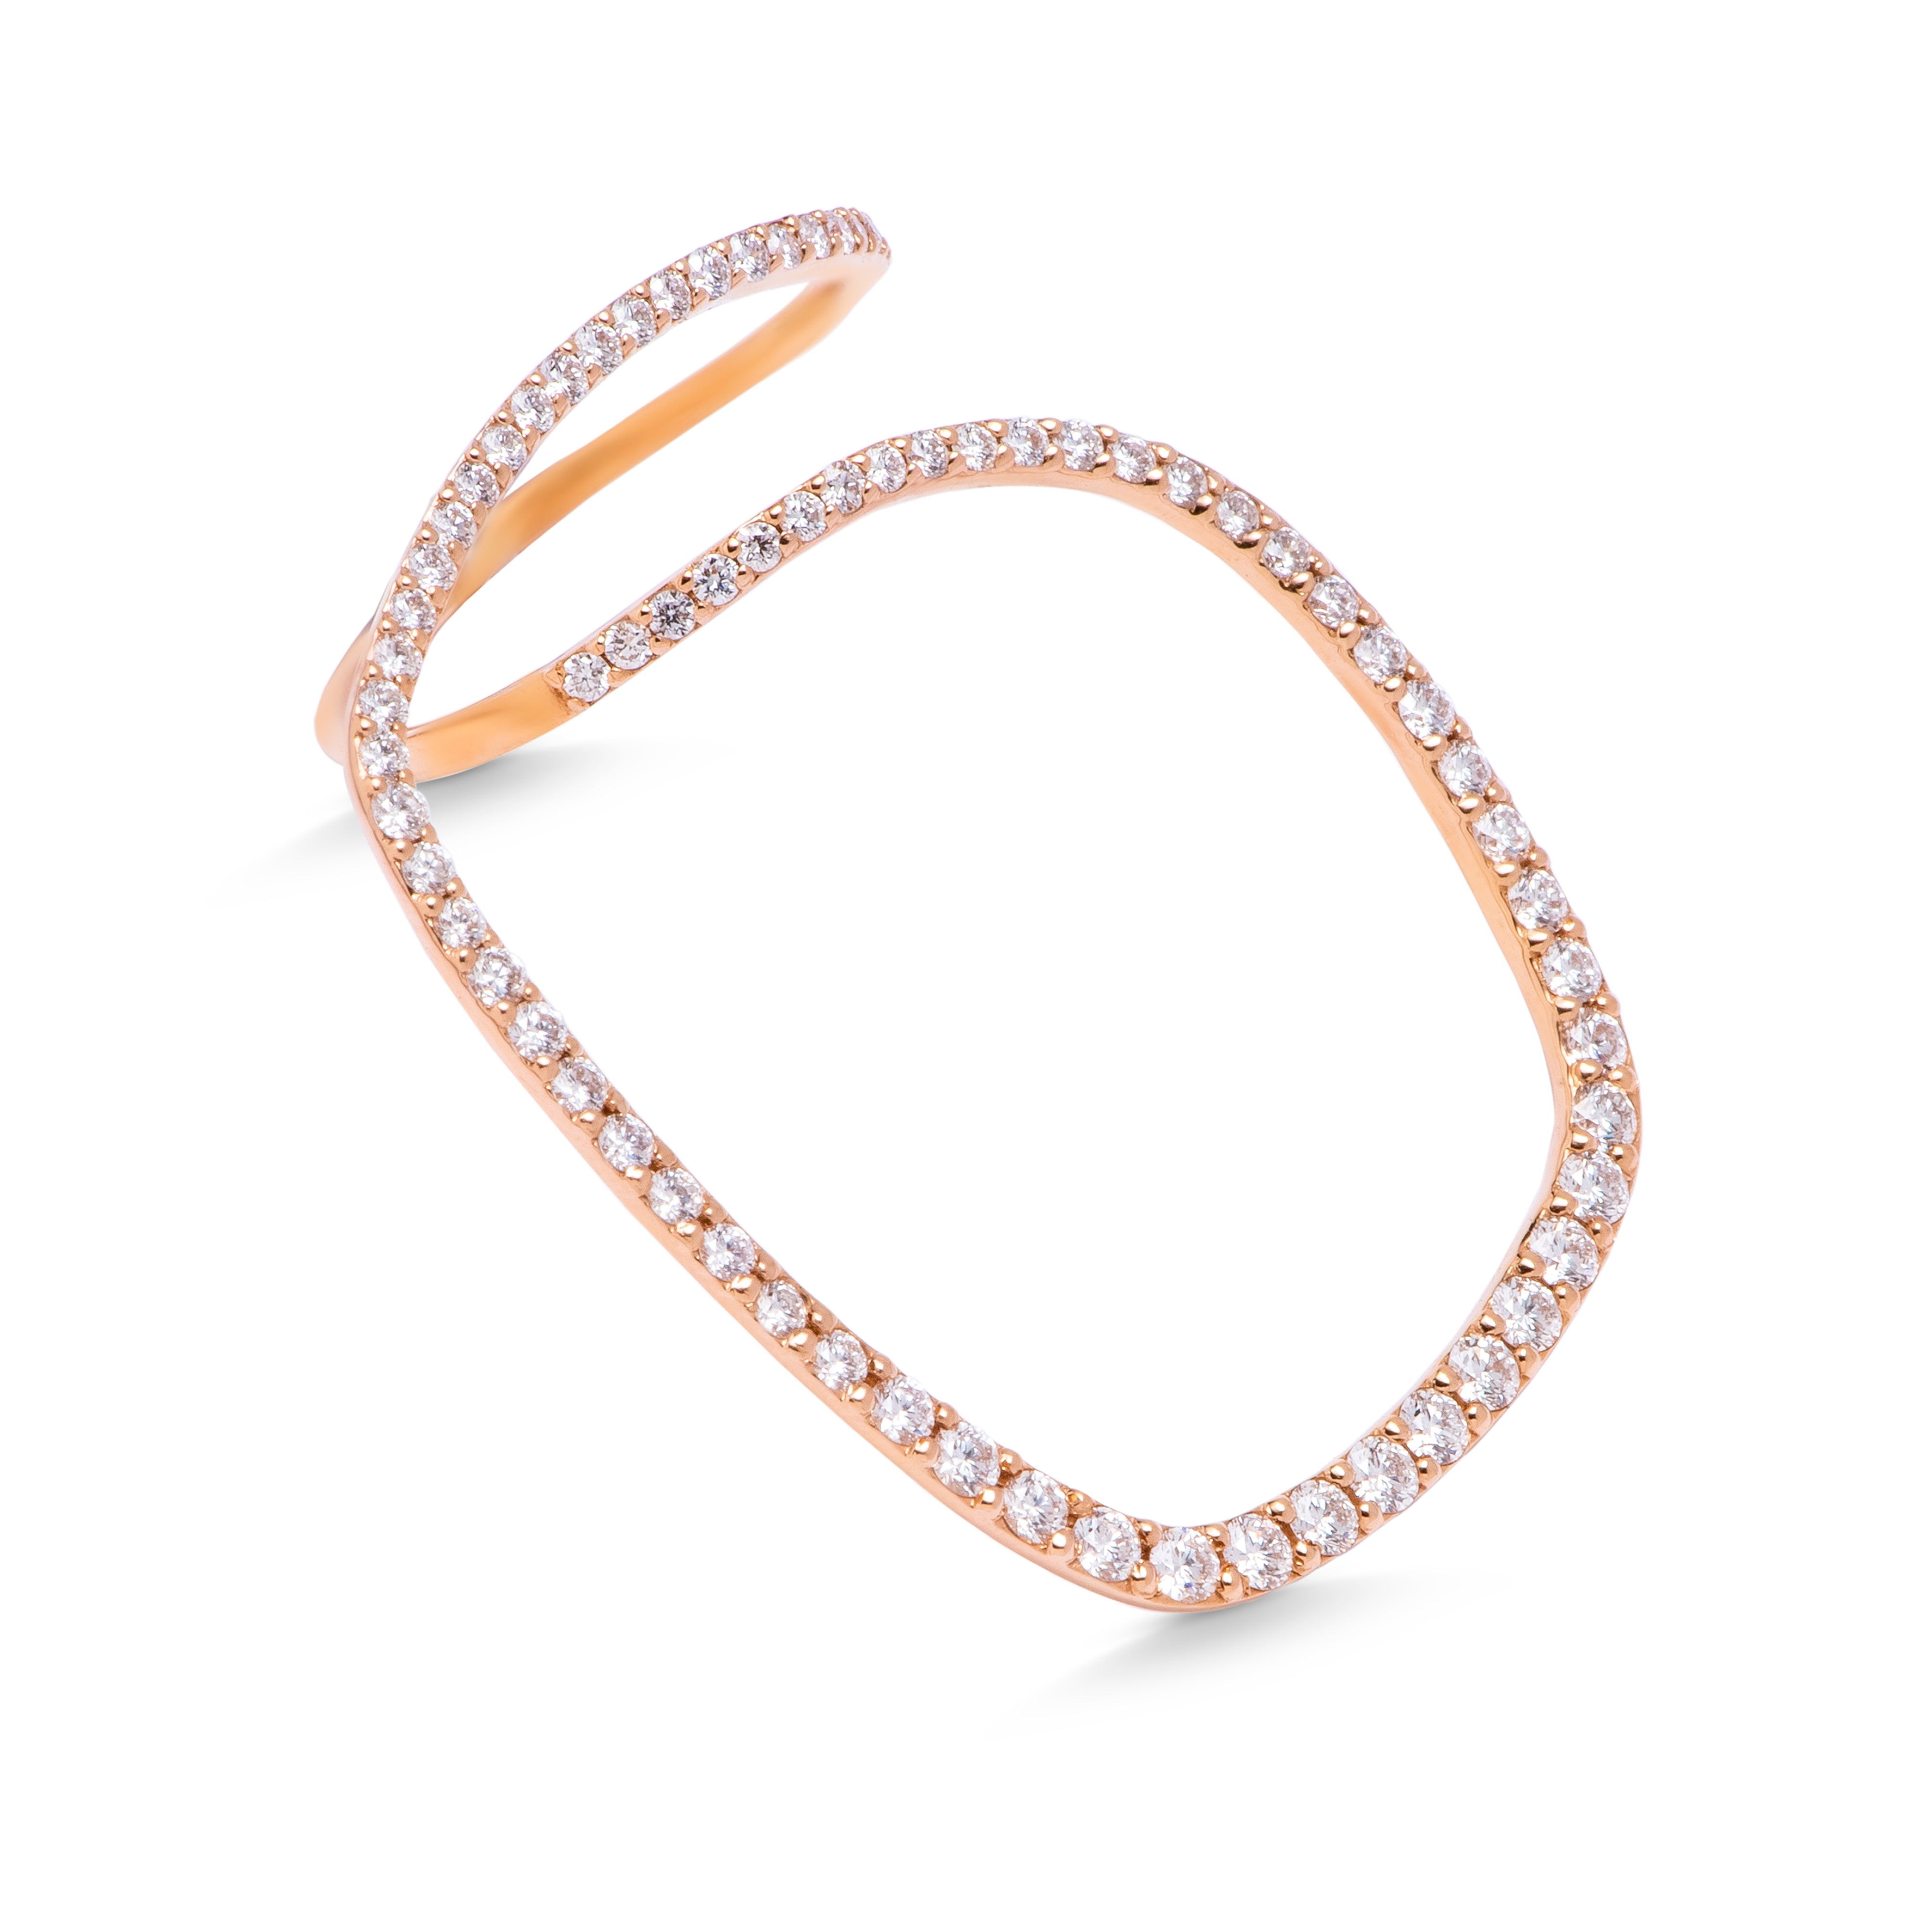 Spiral diamond Ring in 18k Rose Gold - S-RF006S